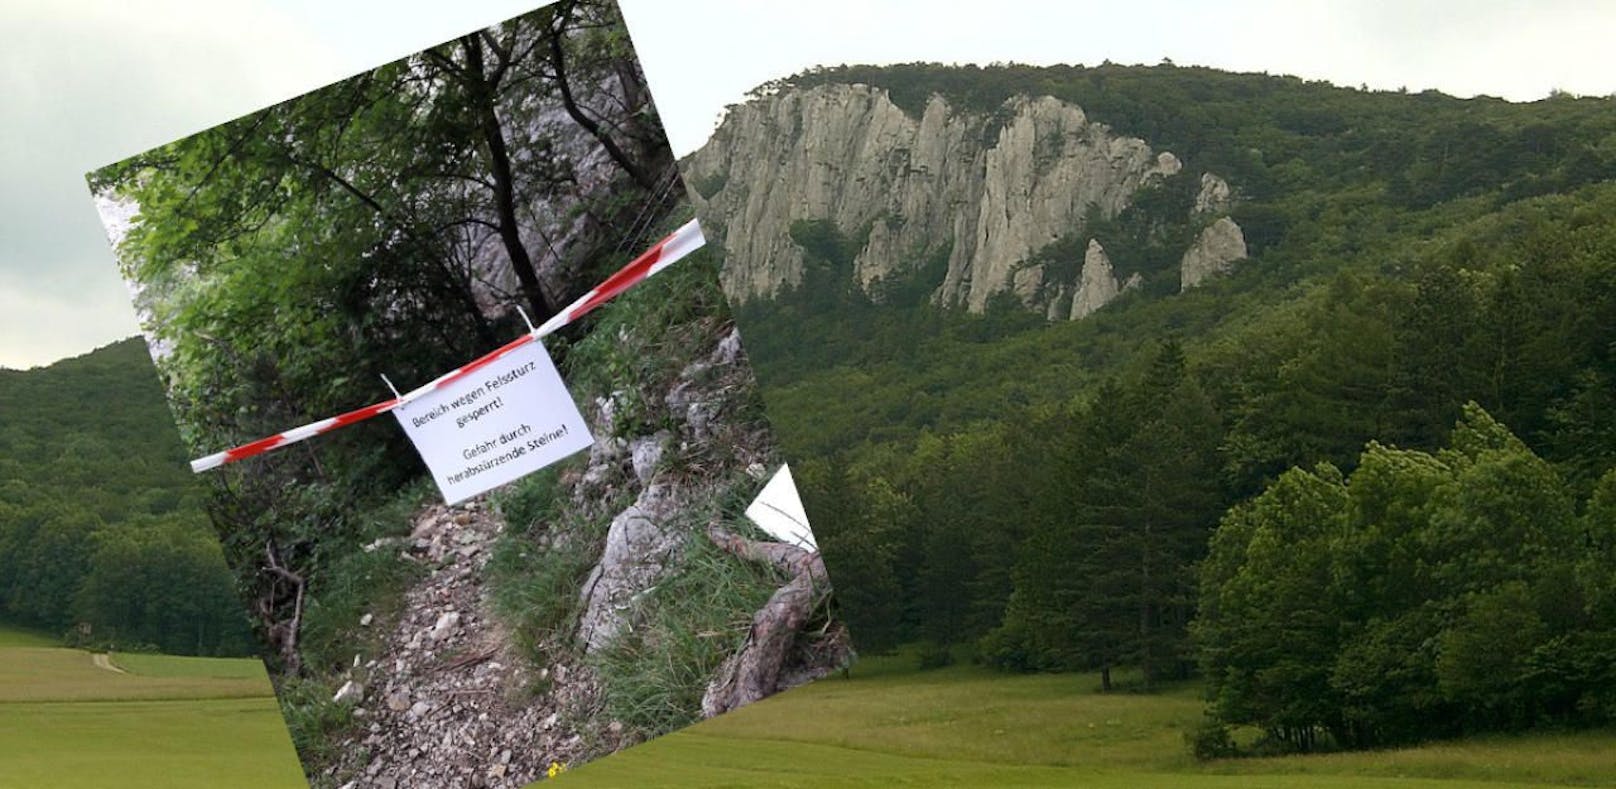 Routen am Peilstein nach Felssturz gesperrt